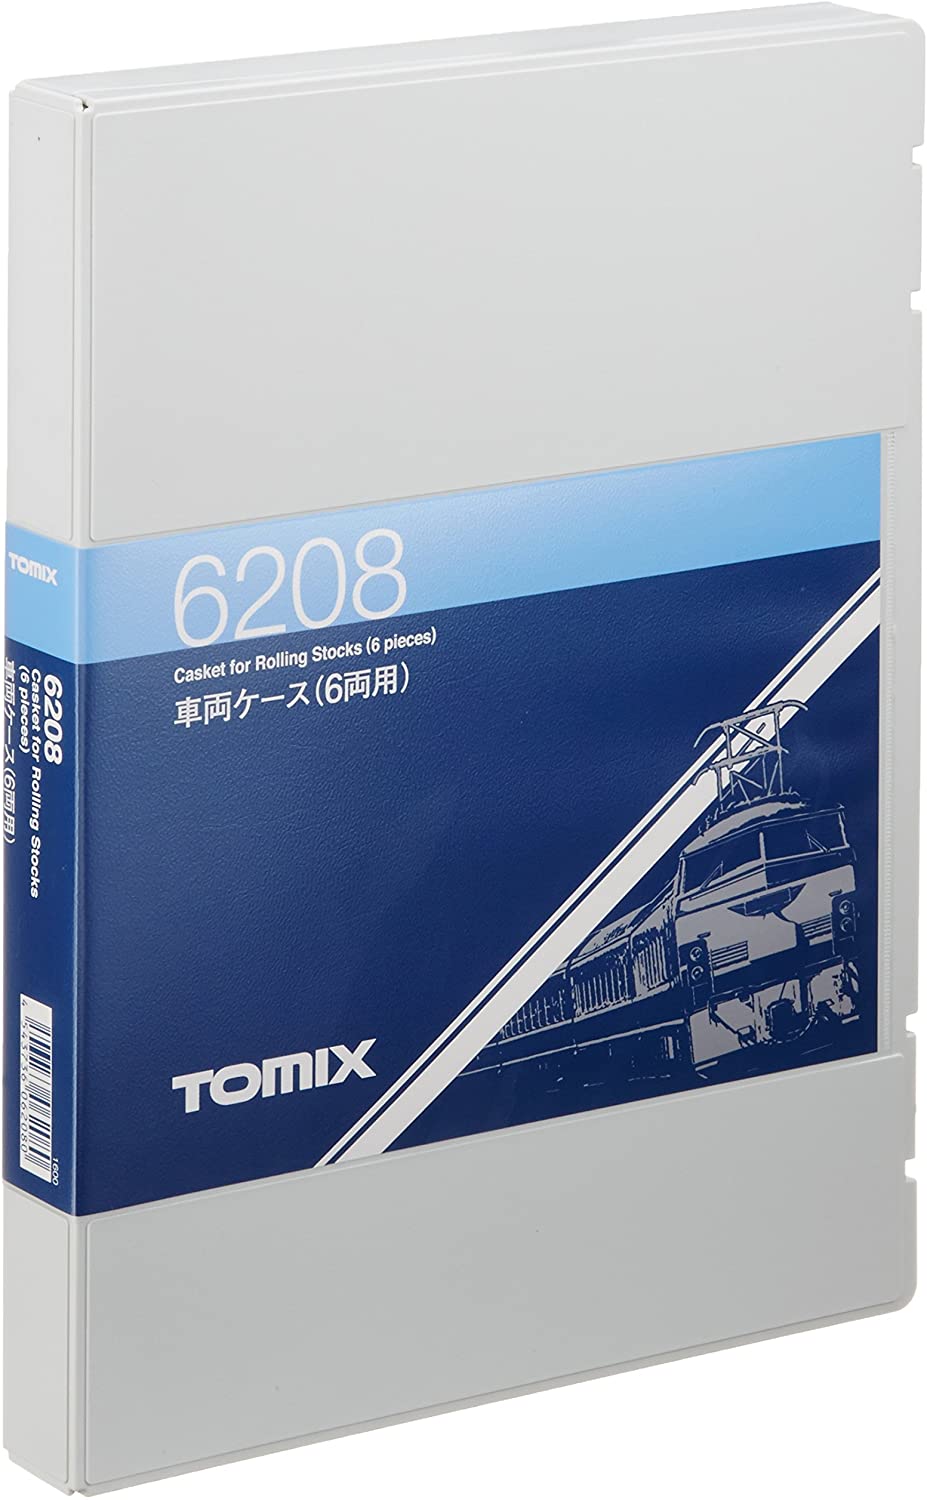 鉄道模型, 制御機器・アクセサリー  TOMIX (6) 6208